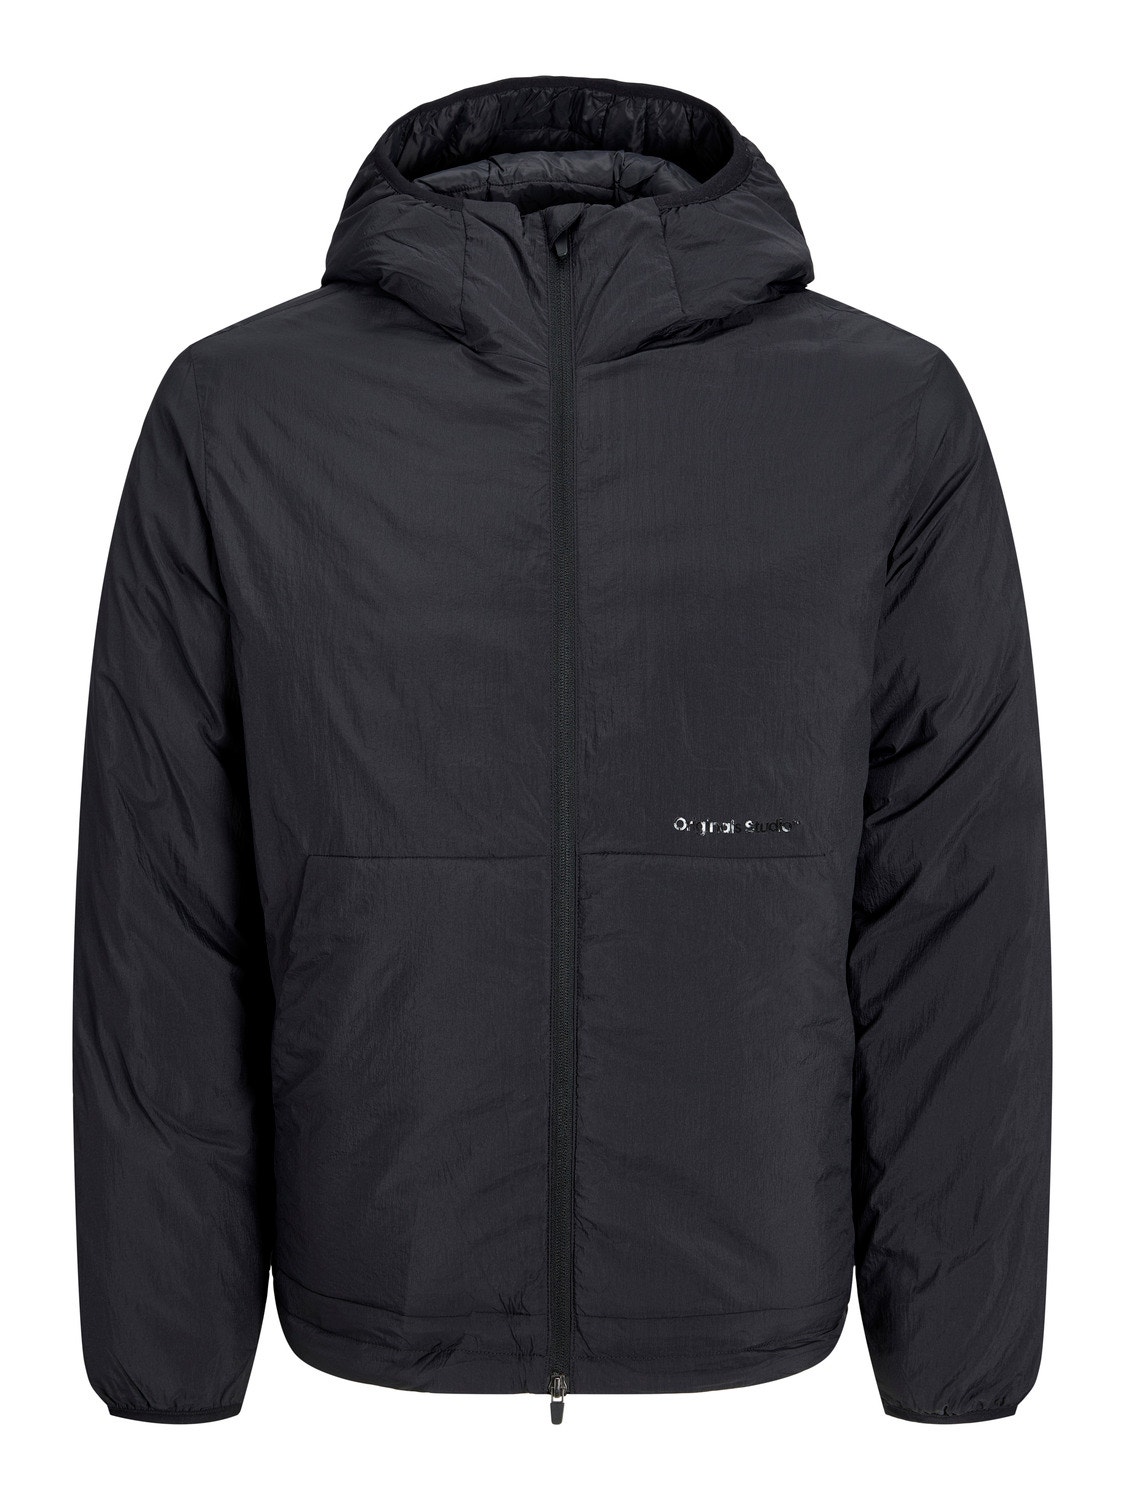 Jack & Jones Light jacket -Black - 12252917